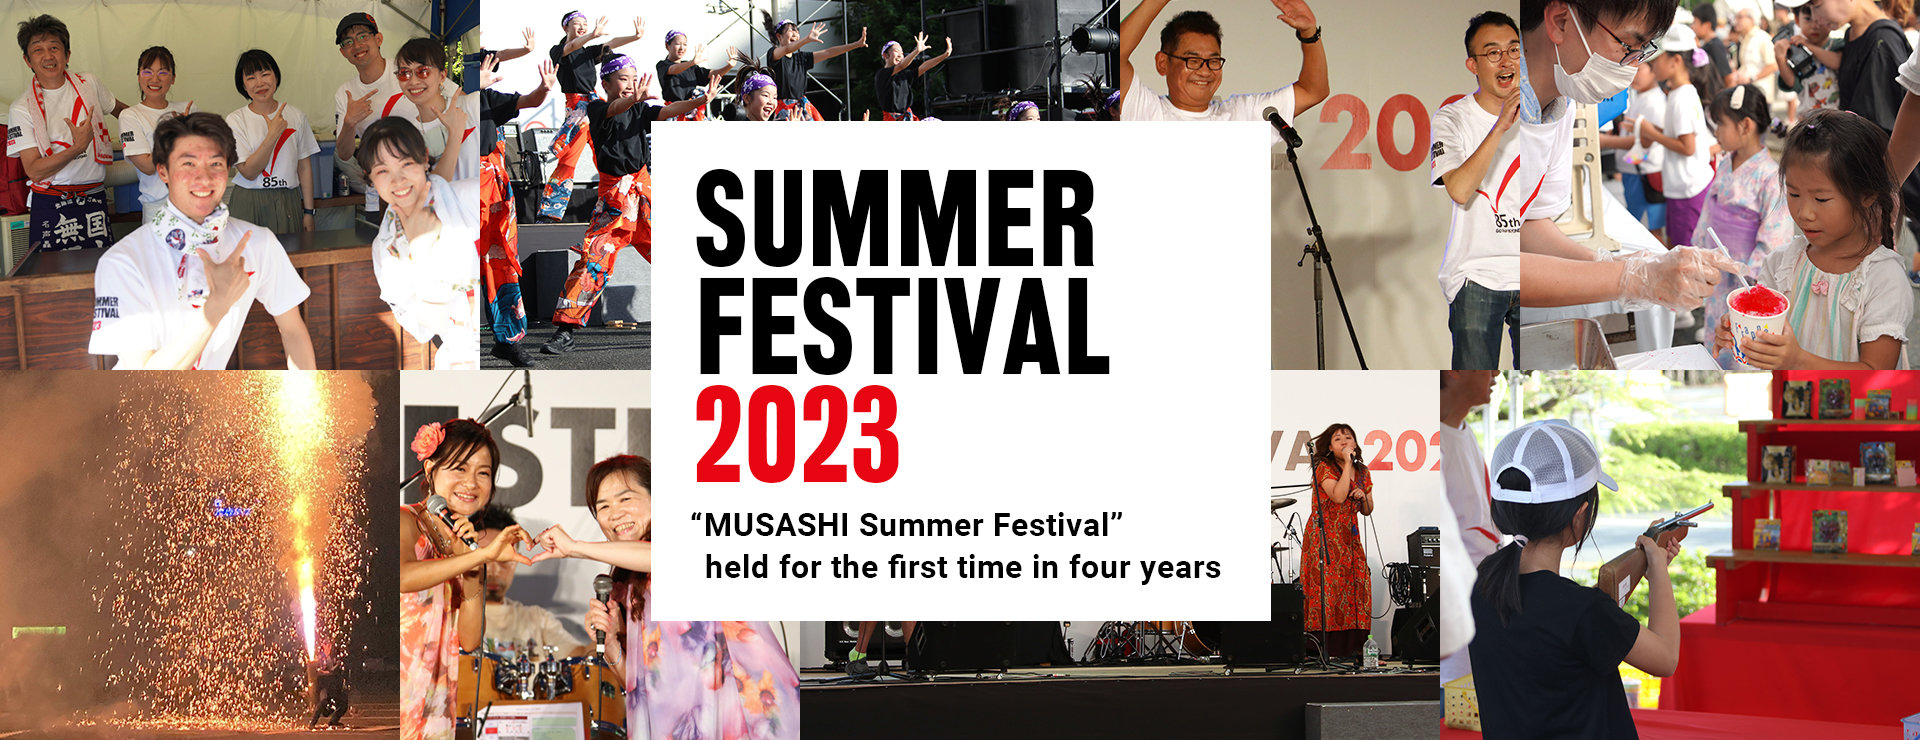 MUSASHI SUMMER FESTIVAL 2023